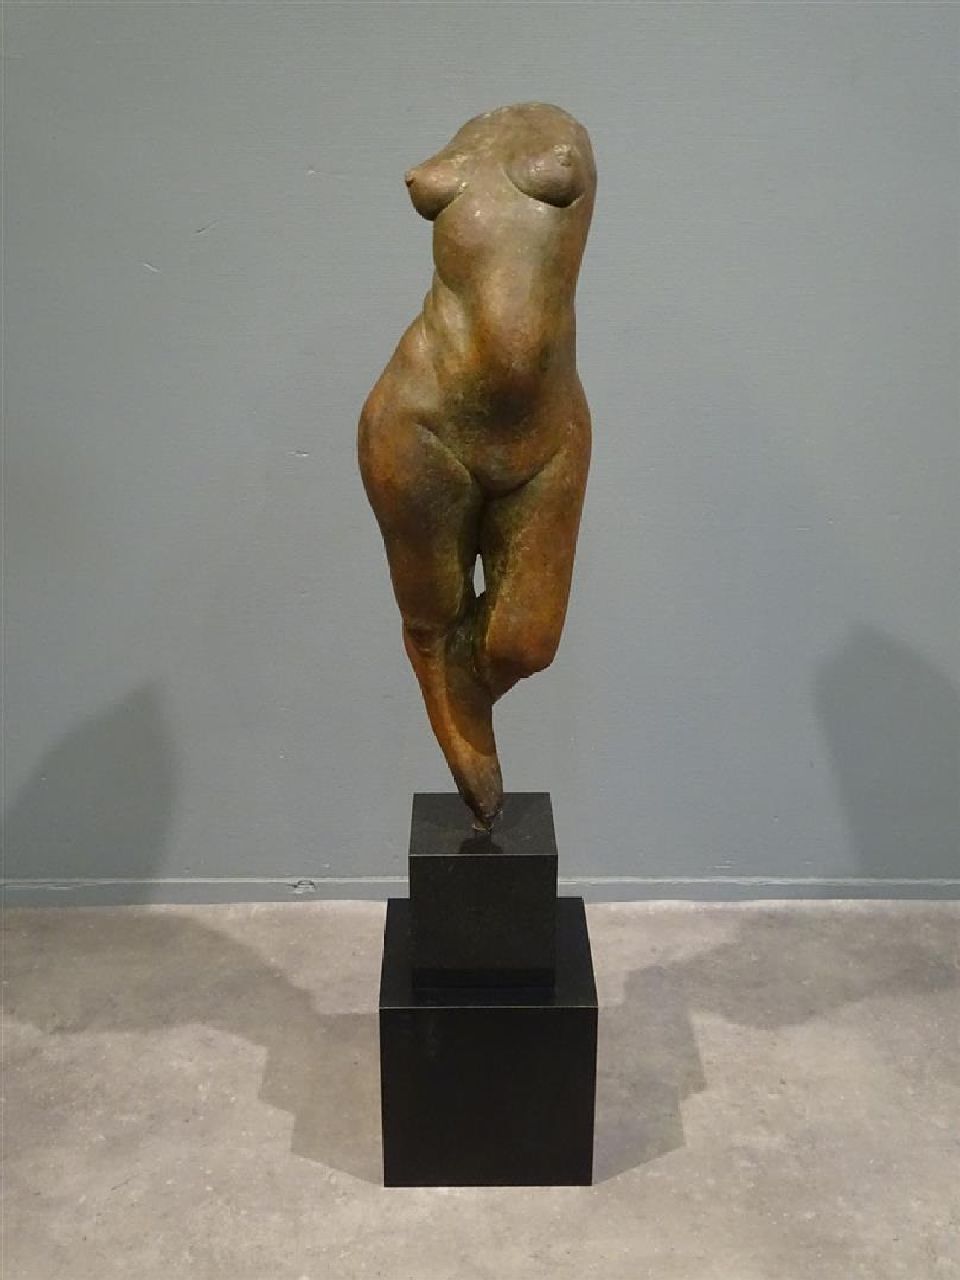 Dirix J.  | Jos Dirix | Sculptures and objects offered for sale | -, bronze 94.0 cm, gesigneerd op onderrand